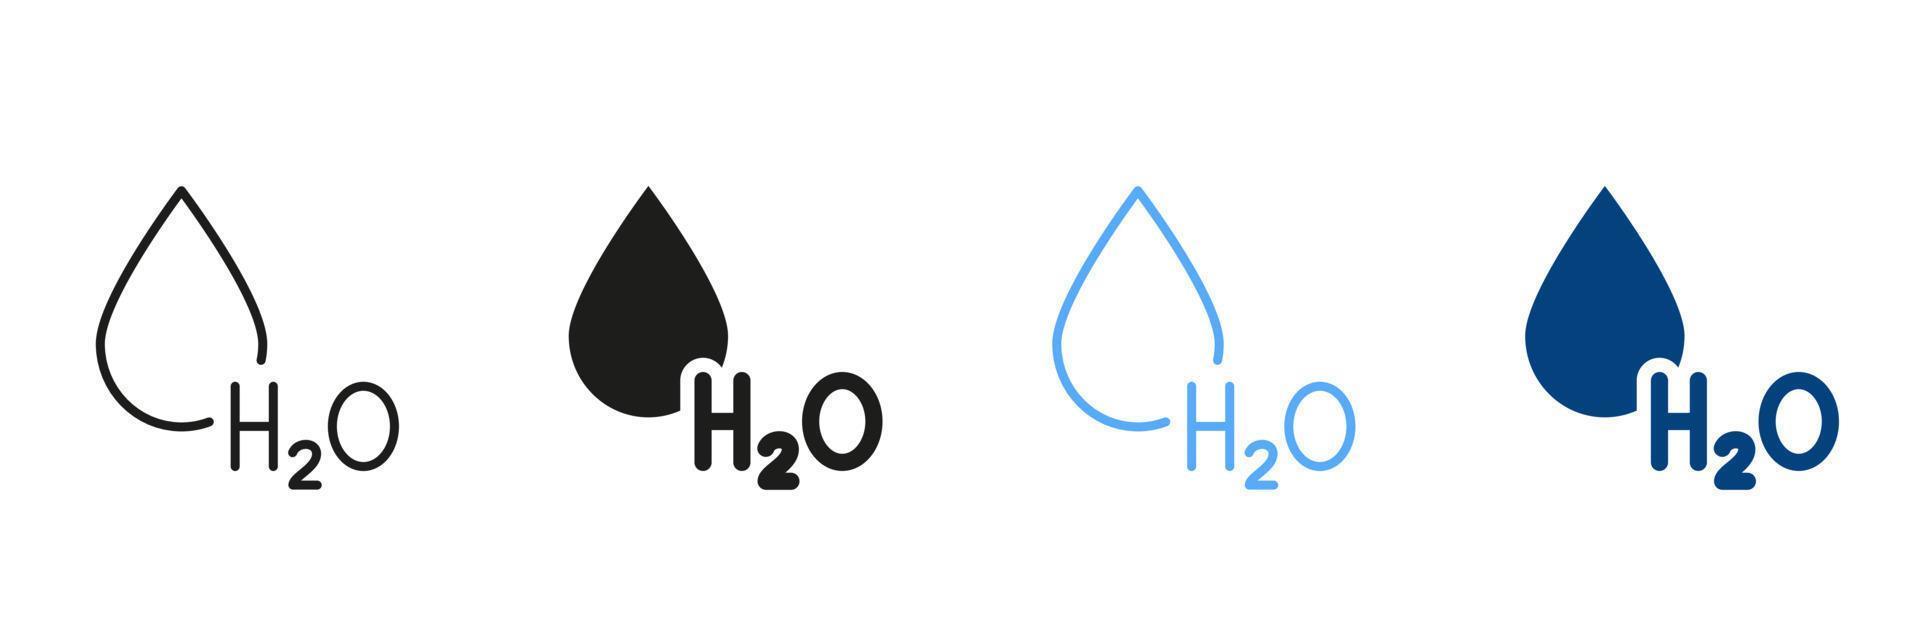 h2O silhuett och linje ikon uppsättning. vatten släppa svart och Färg tecken samling. kemisk formel för vatten. symbol av färsk aqua symboler. isolerat vektor illustration.